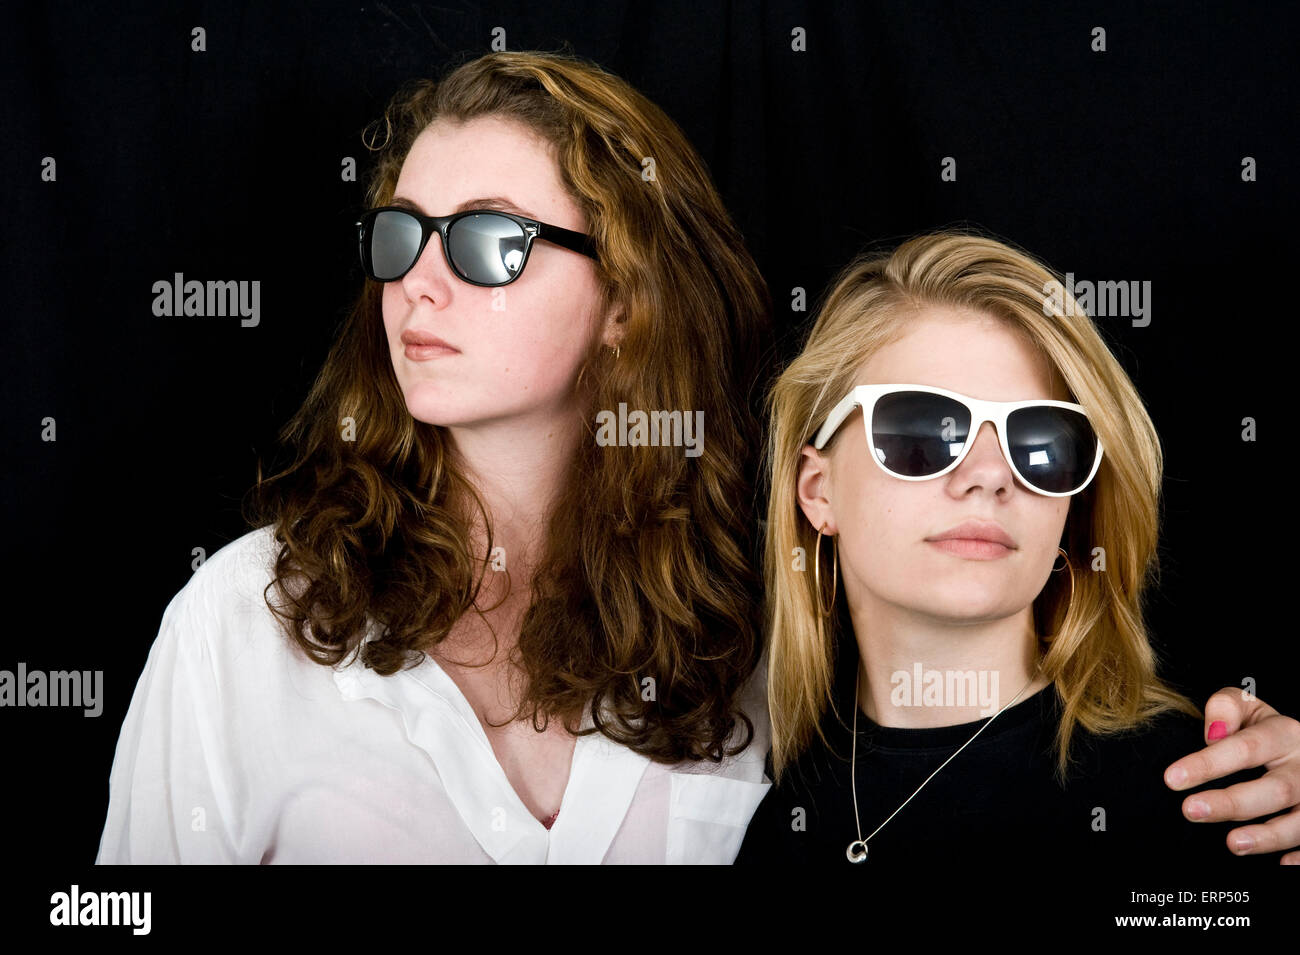 Zwei Mädchen im Teenageralter im studio Stockfoto